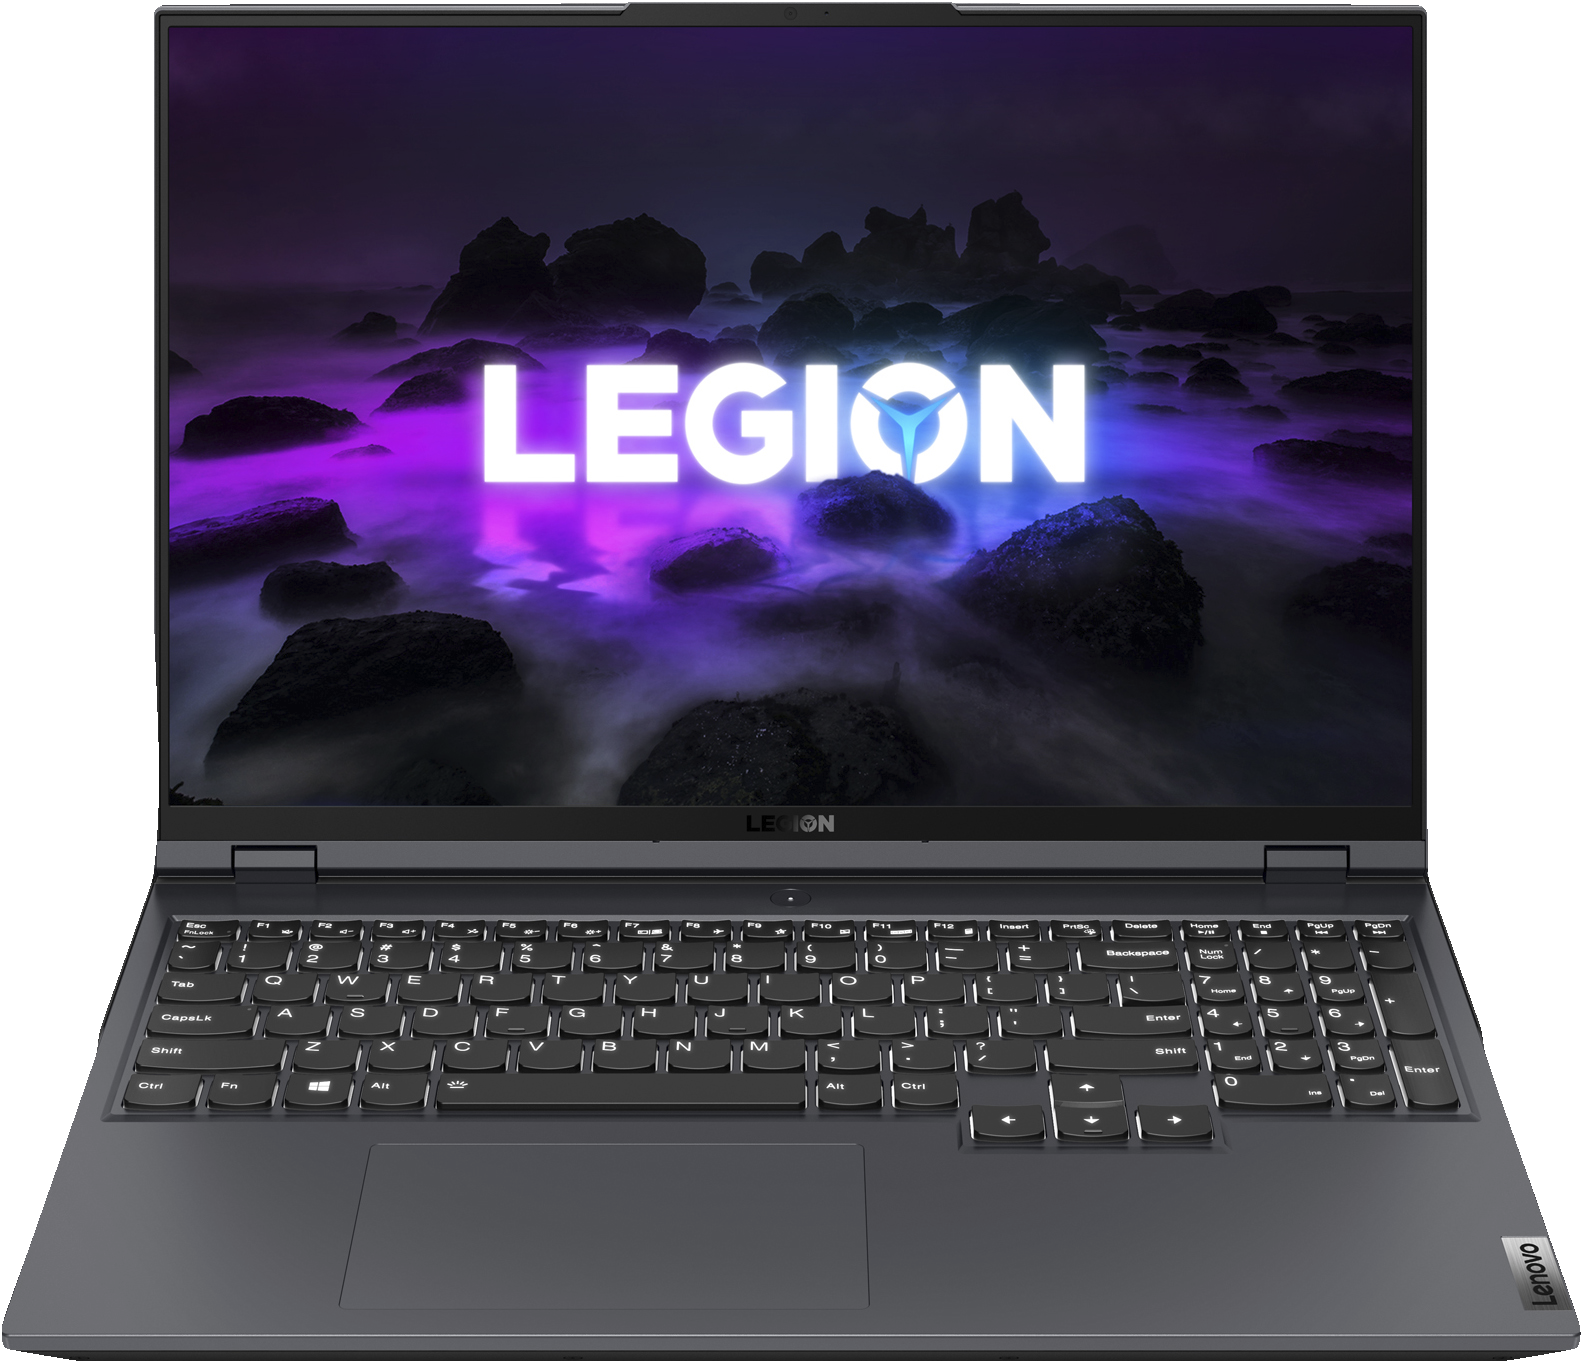 "Vinner testen med gode bruksegenskaper, soleklart best skjerm og god ytelse." Sånn omtaler Tek.no Lenovo Legion 5 Pro etter deres test juli 2021.